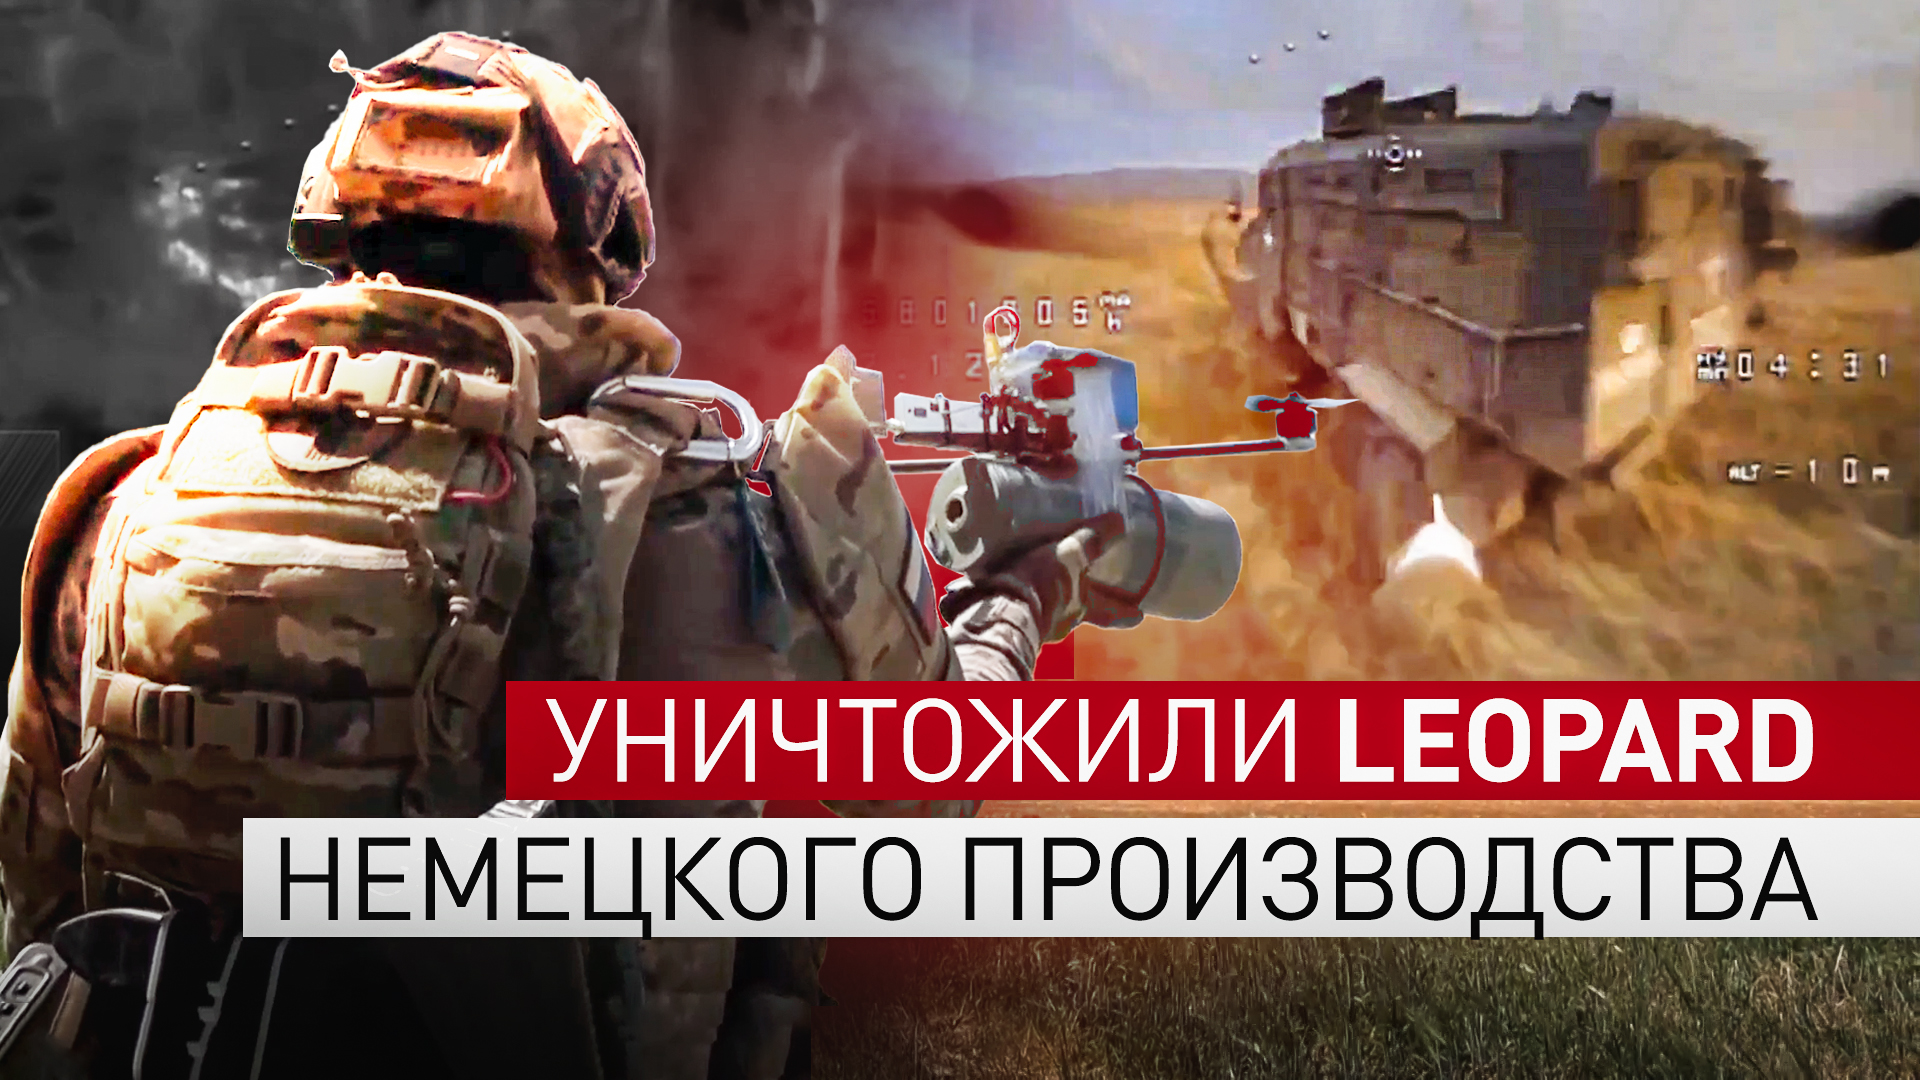 Операторы FPV-дронов уничтожили Leopard на Южно-Донецком направлении